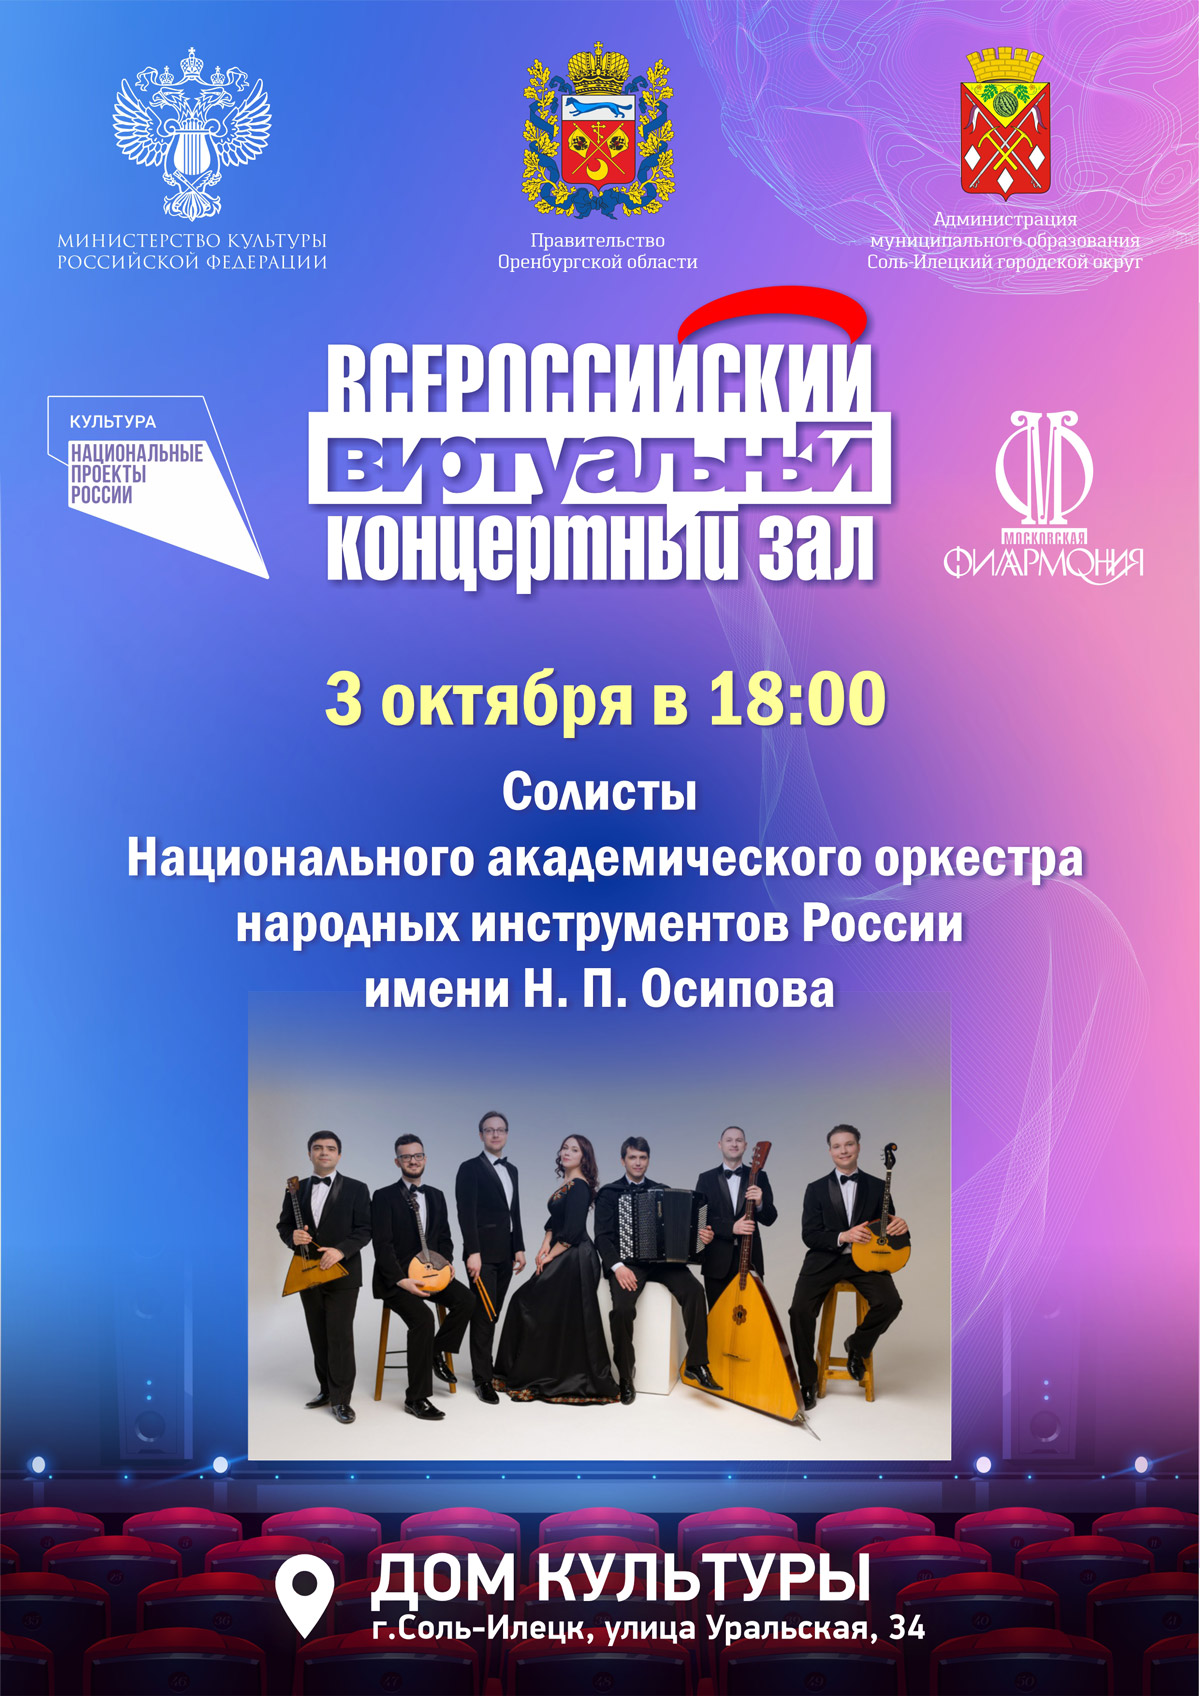 Солисты Национального академического оркестра народных инструментов России имени Н. П. Осипова